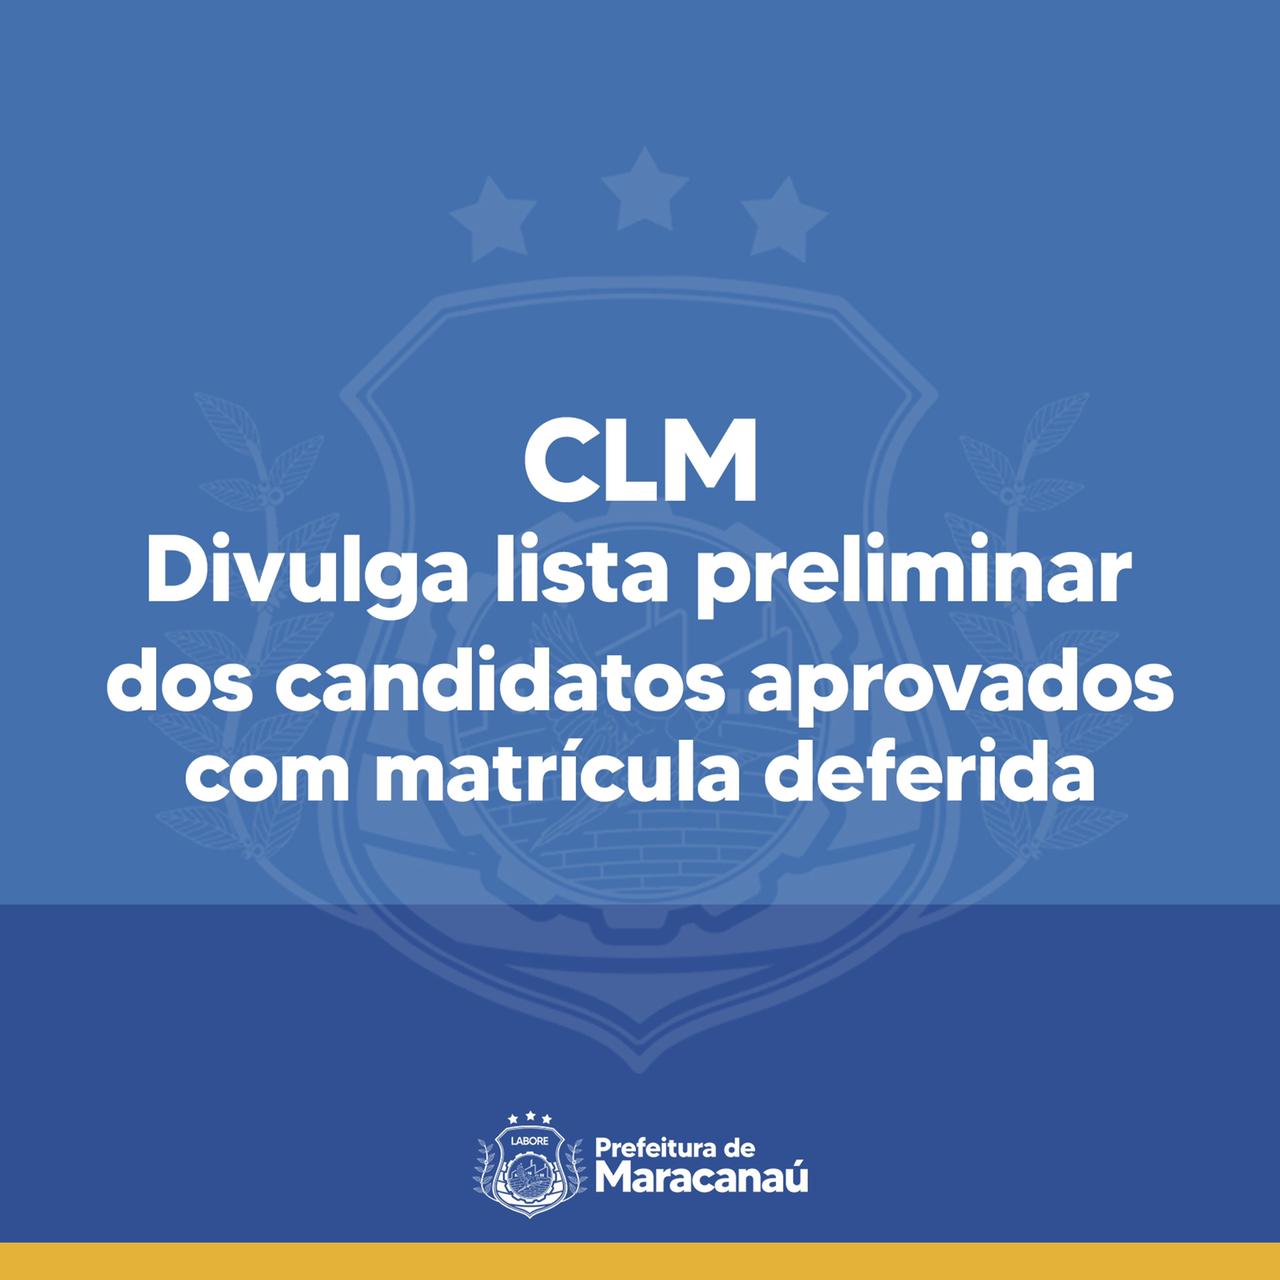 You are currently viewing CLM divulga lista preliminar dos candidatos aprovados com matrícula deferida